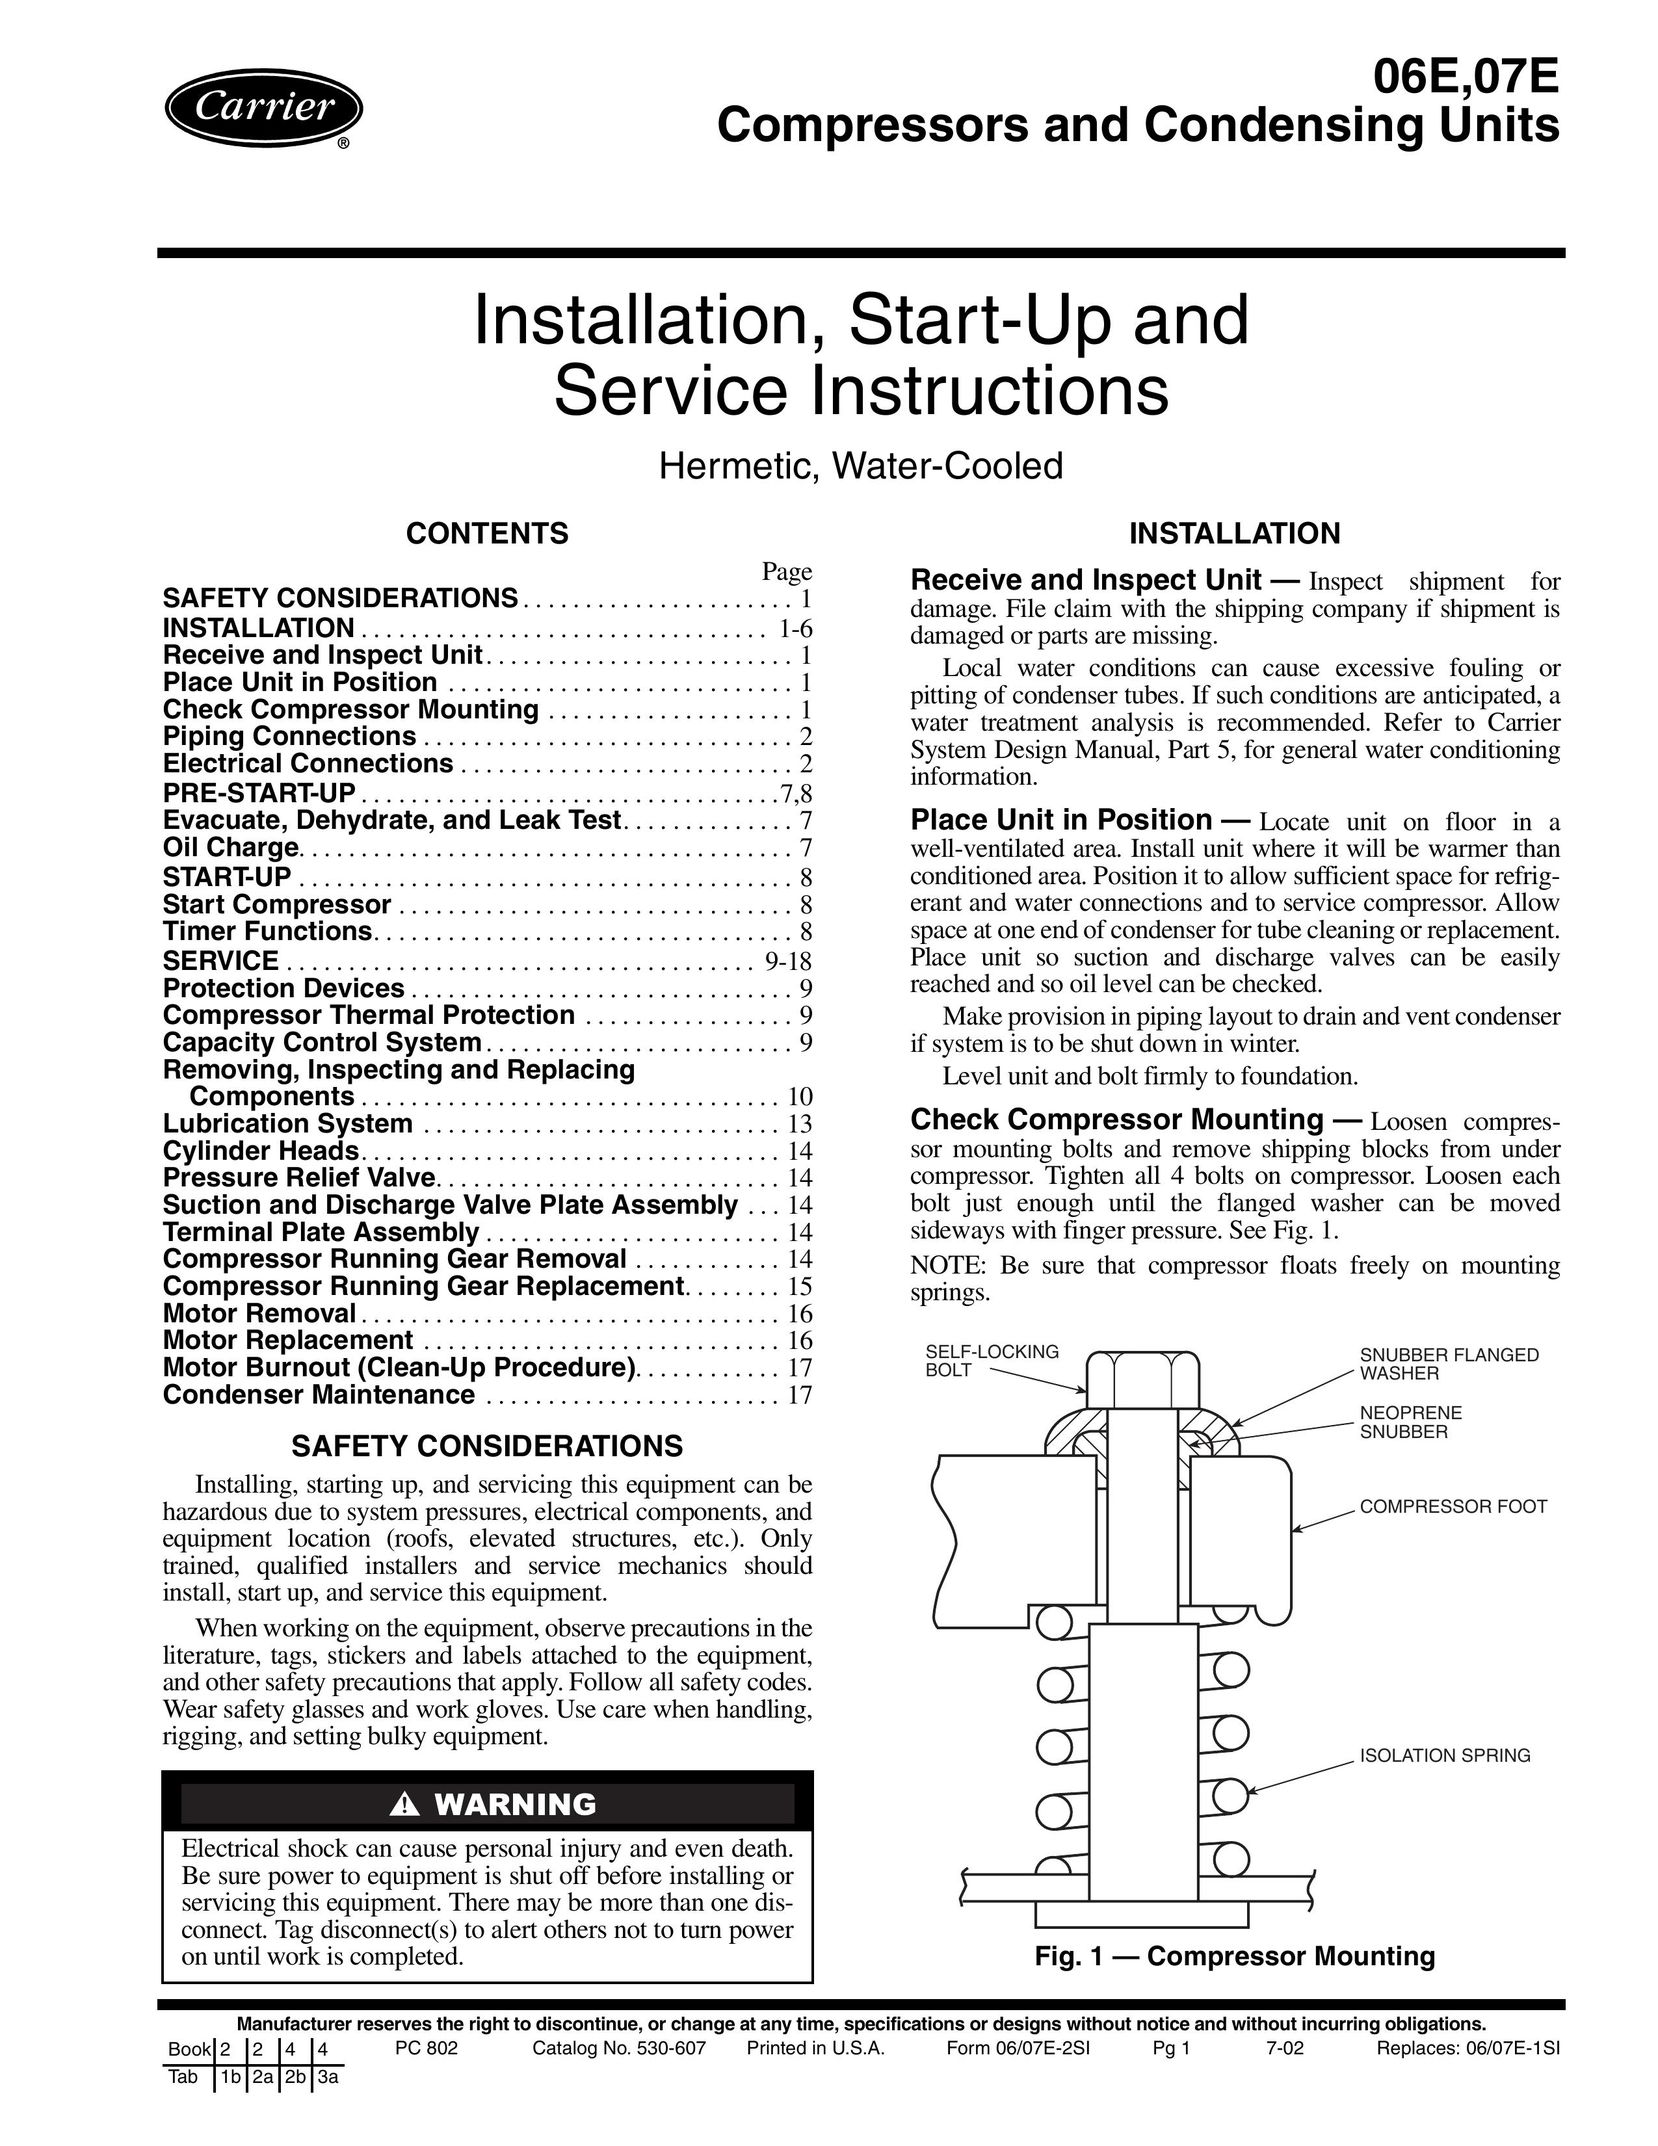 Carrier 06E Air Compressor User Manual